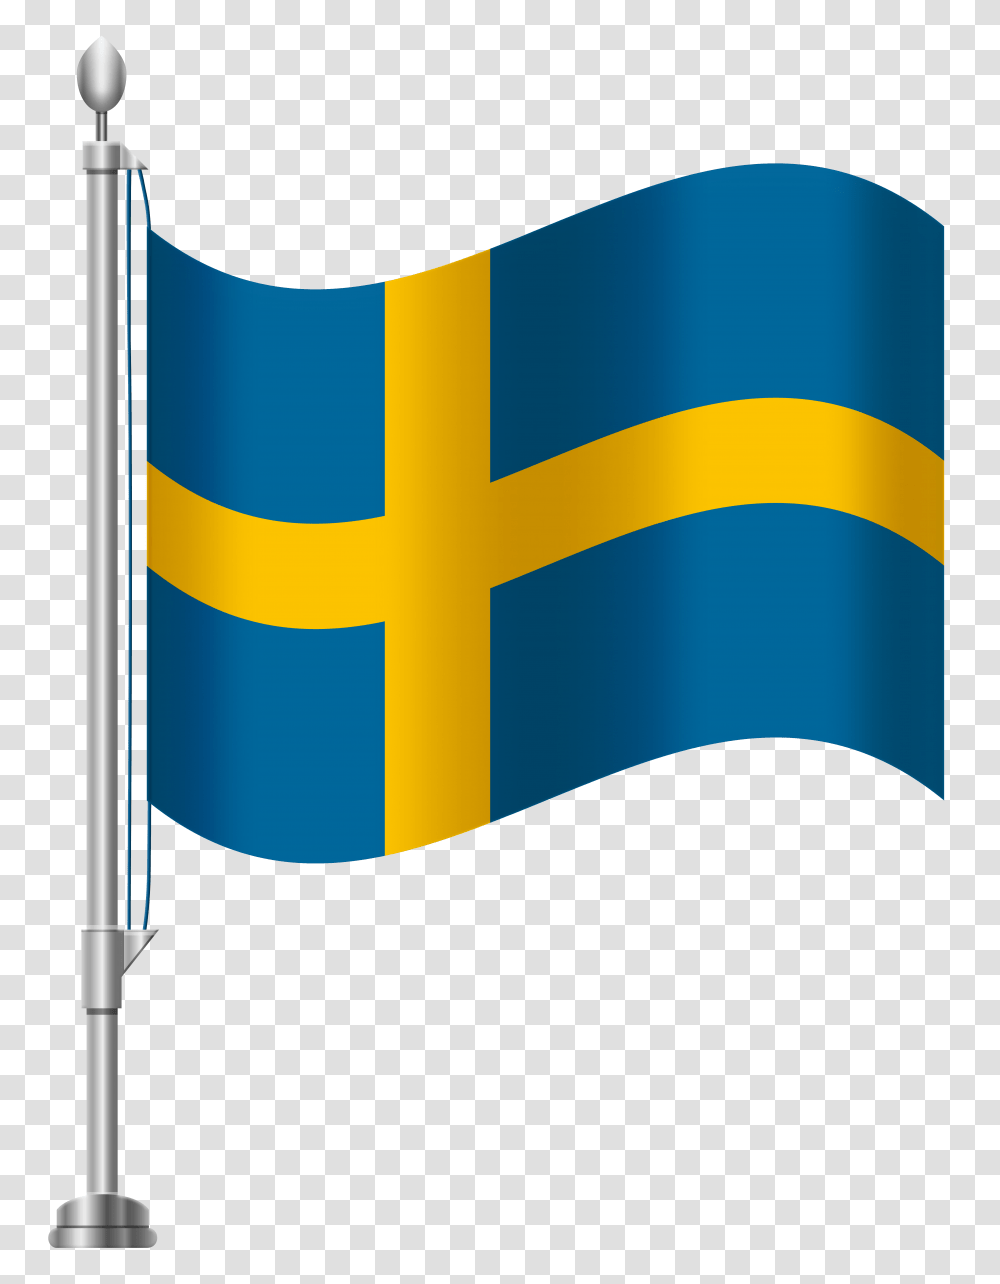 Sweden Flag Clip Art, Logo, Trademark Transparent Png